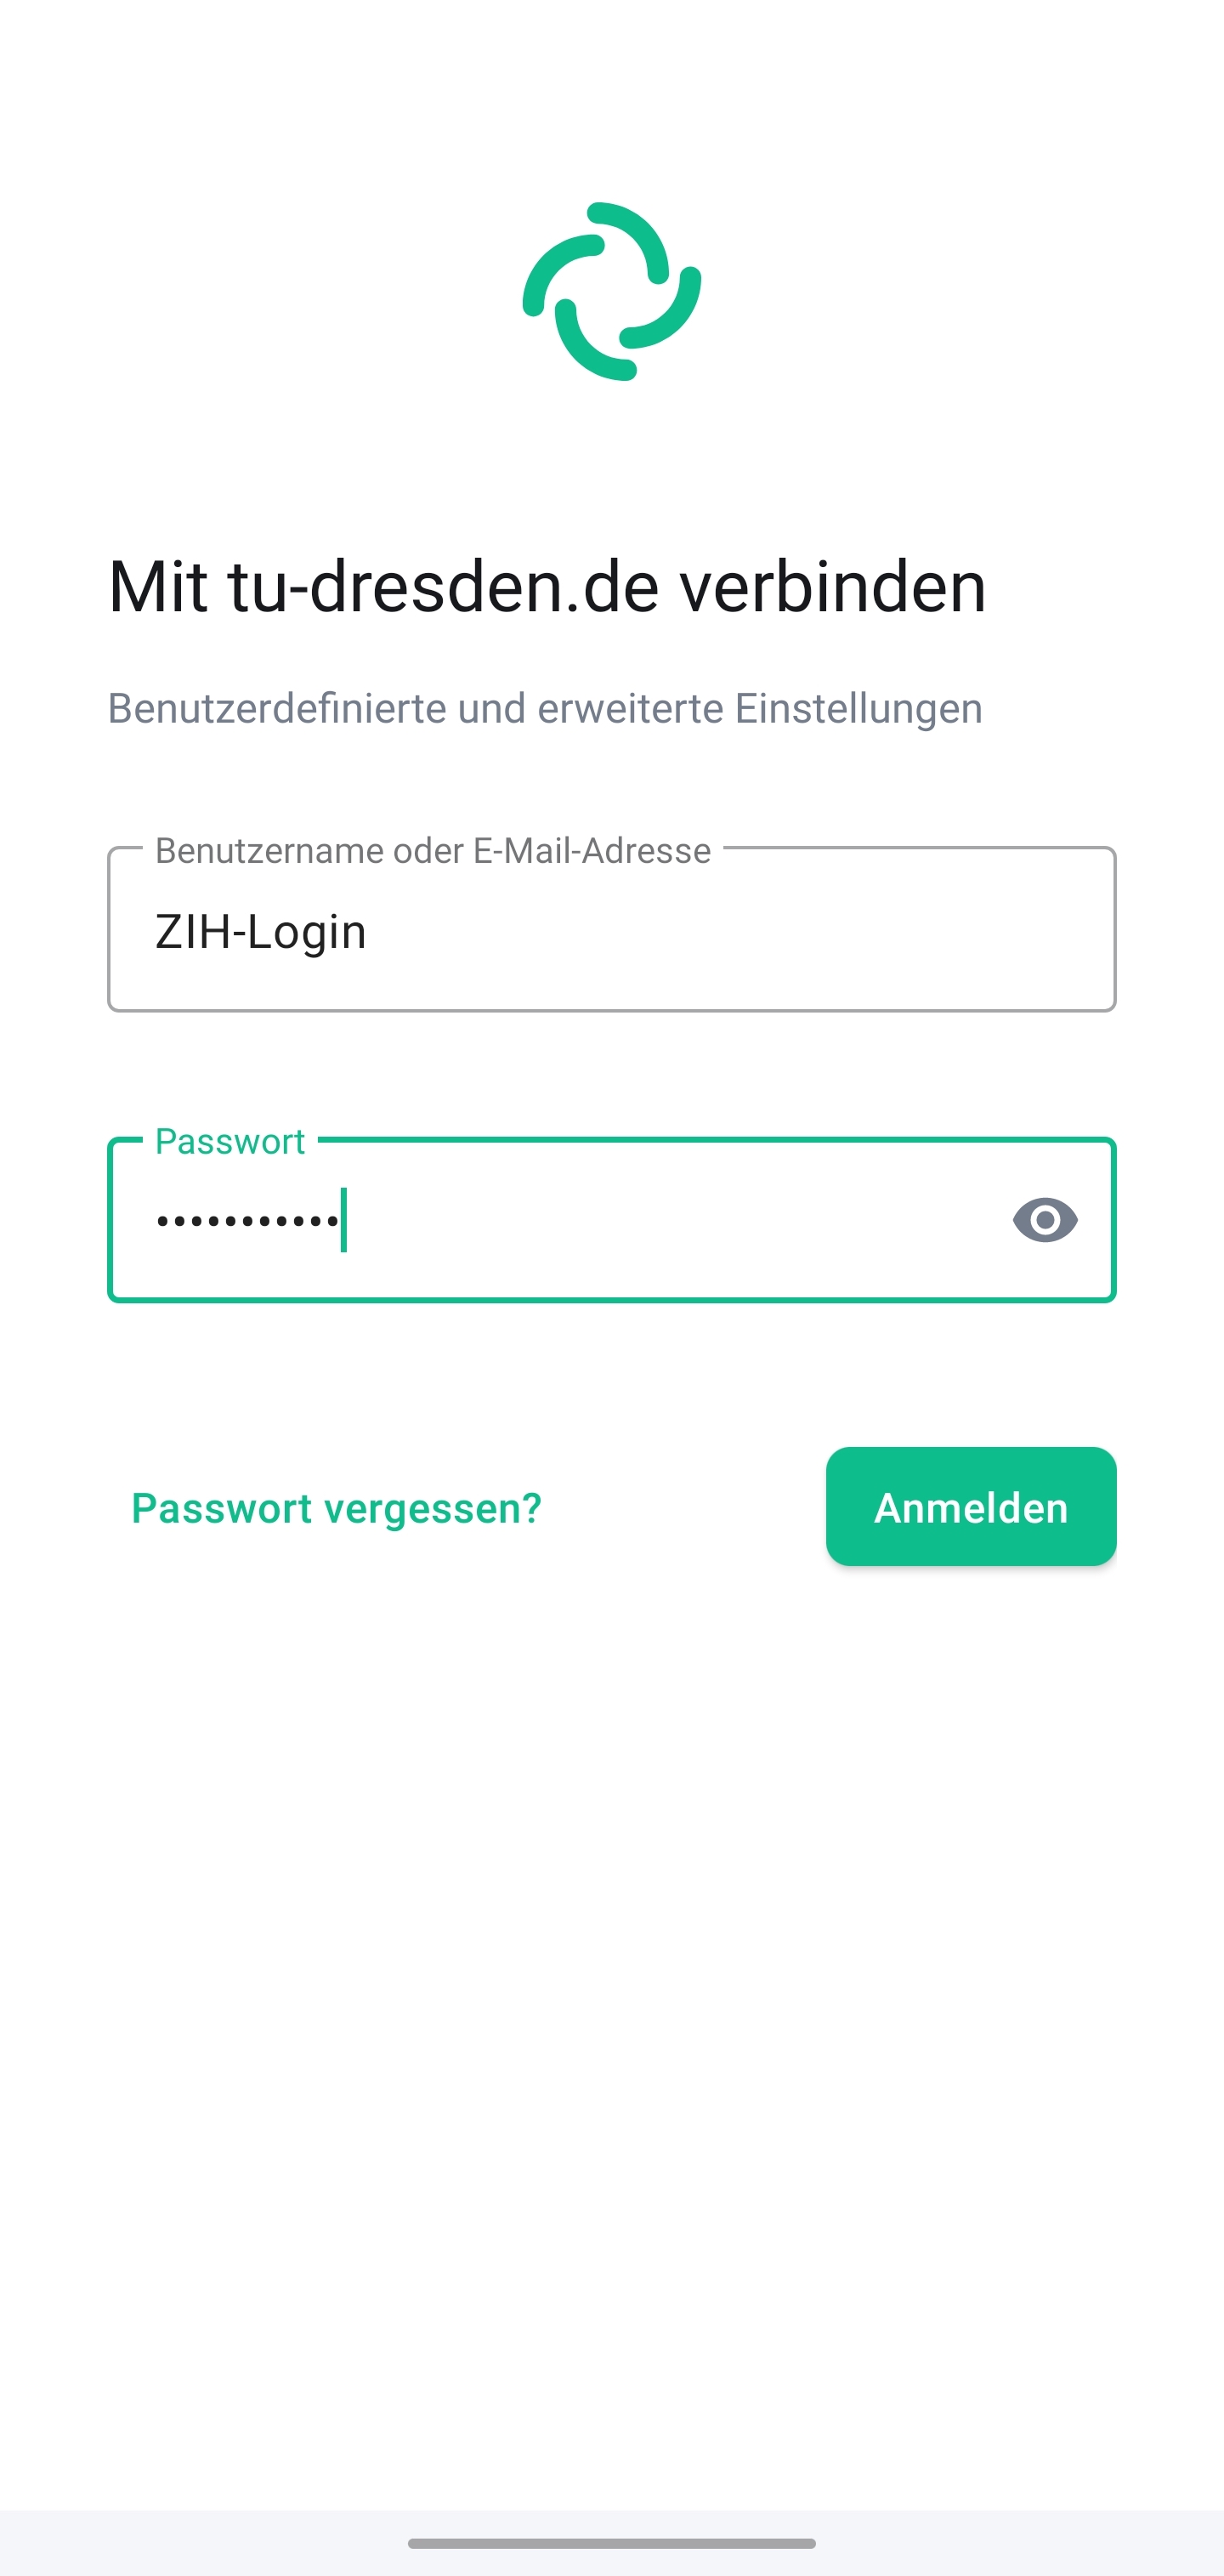 Bildschirm “Mit uni-weimar.de” verbinden erwartet im Textfeld “Benutzername oder E-Mail-Adresse” die Eingabe des BUW-Logins und das Textfeld “Passwort” die Eingabe des BUW-Passworts. Zum Verbinden befindet sich der Button “Anmelden” auf der Anzeige.